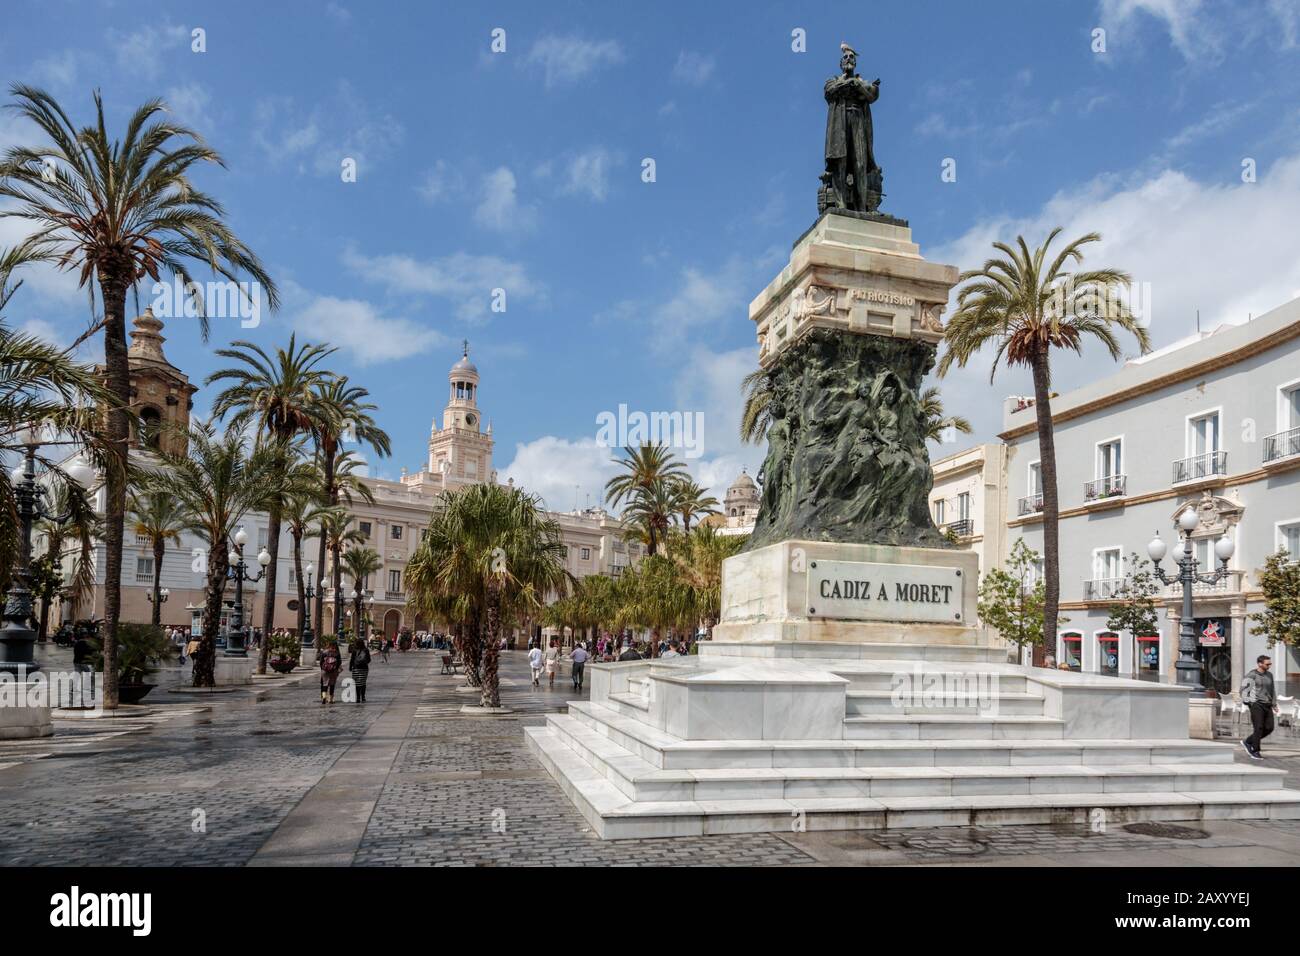 Statue de Cadix politicien Segismundo Moret Cadiz, Plaza de San Juan de Dios, Cadix, Andalousie, Espagne. Banque D'Images